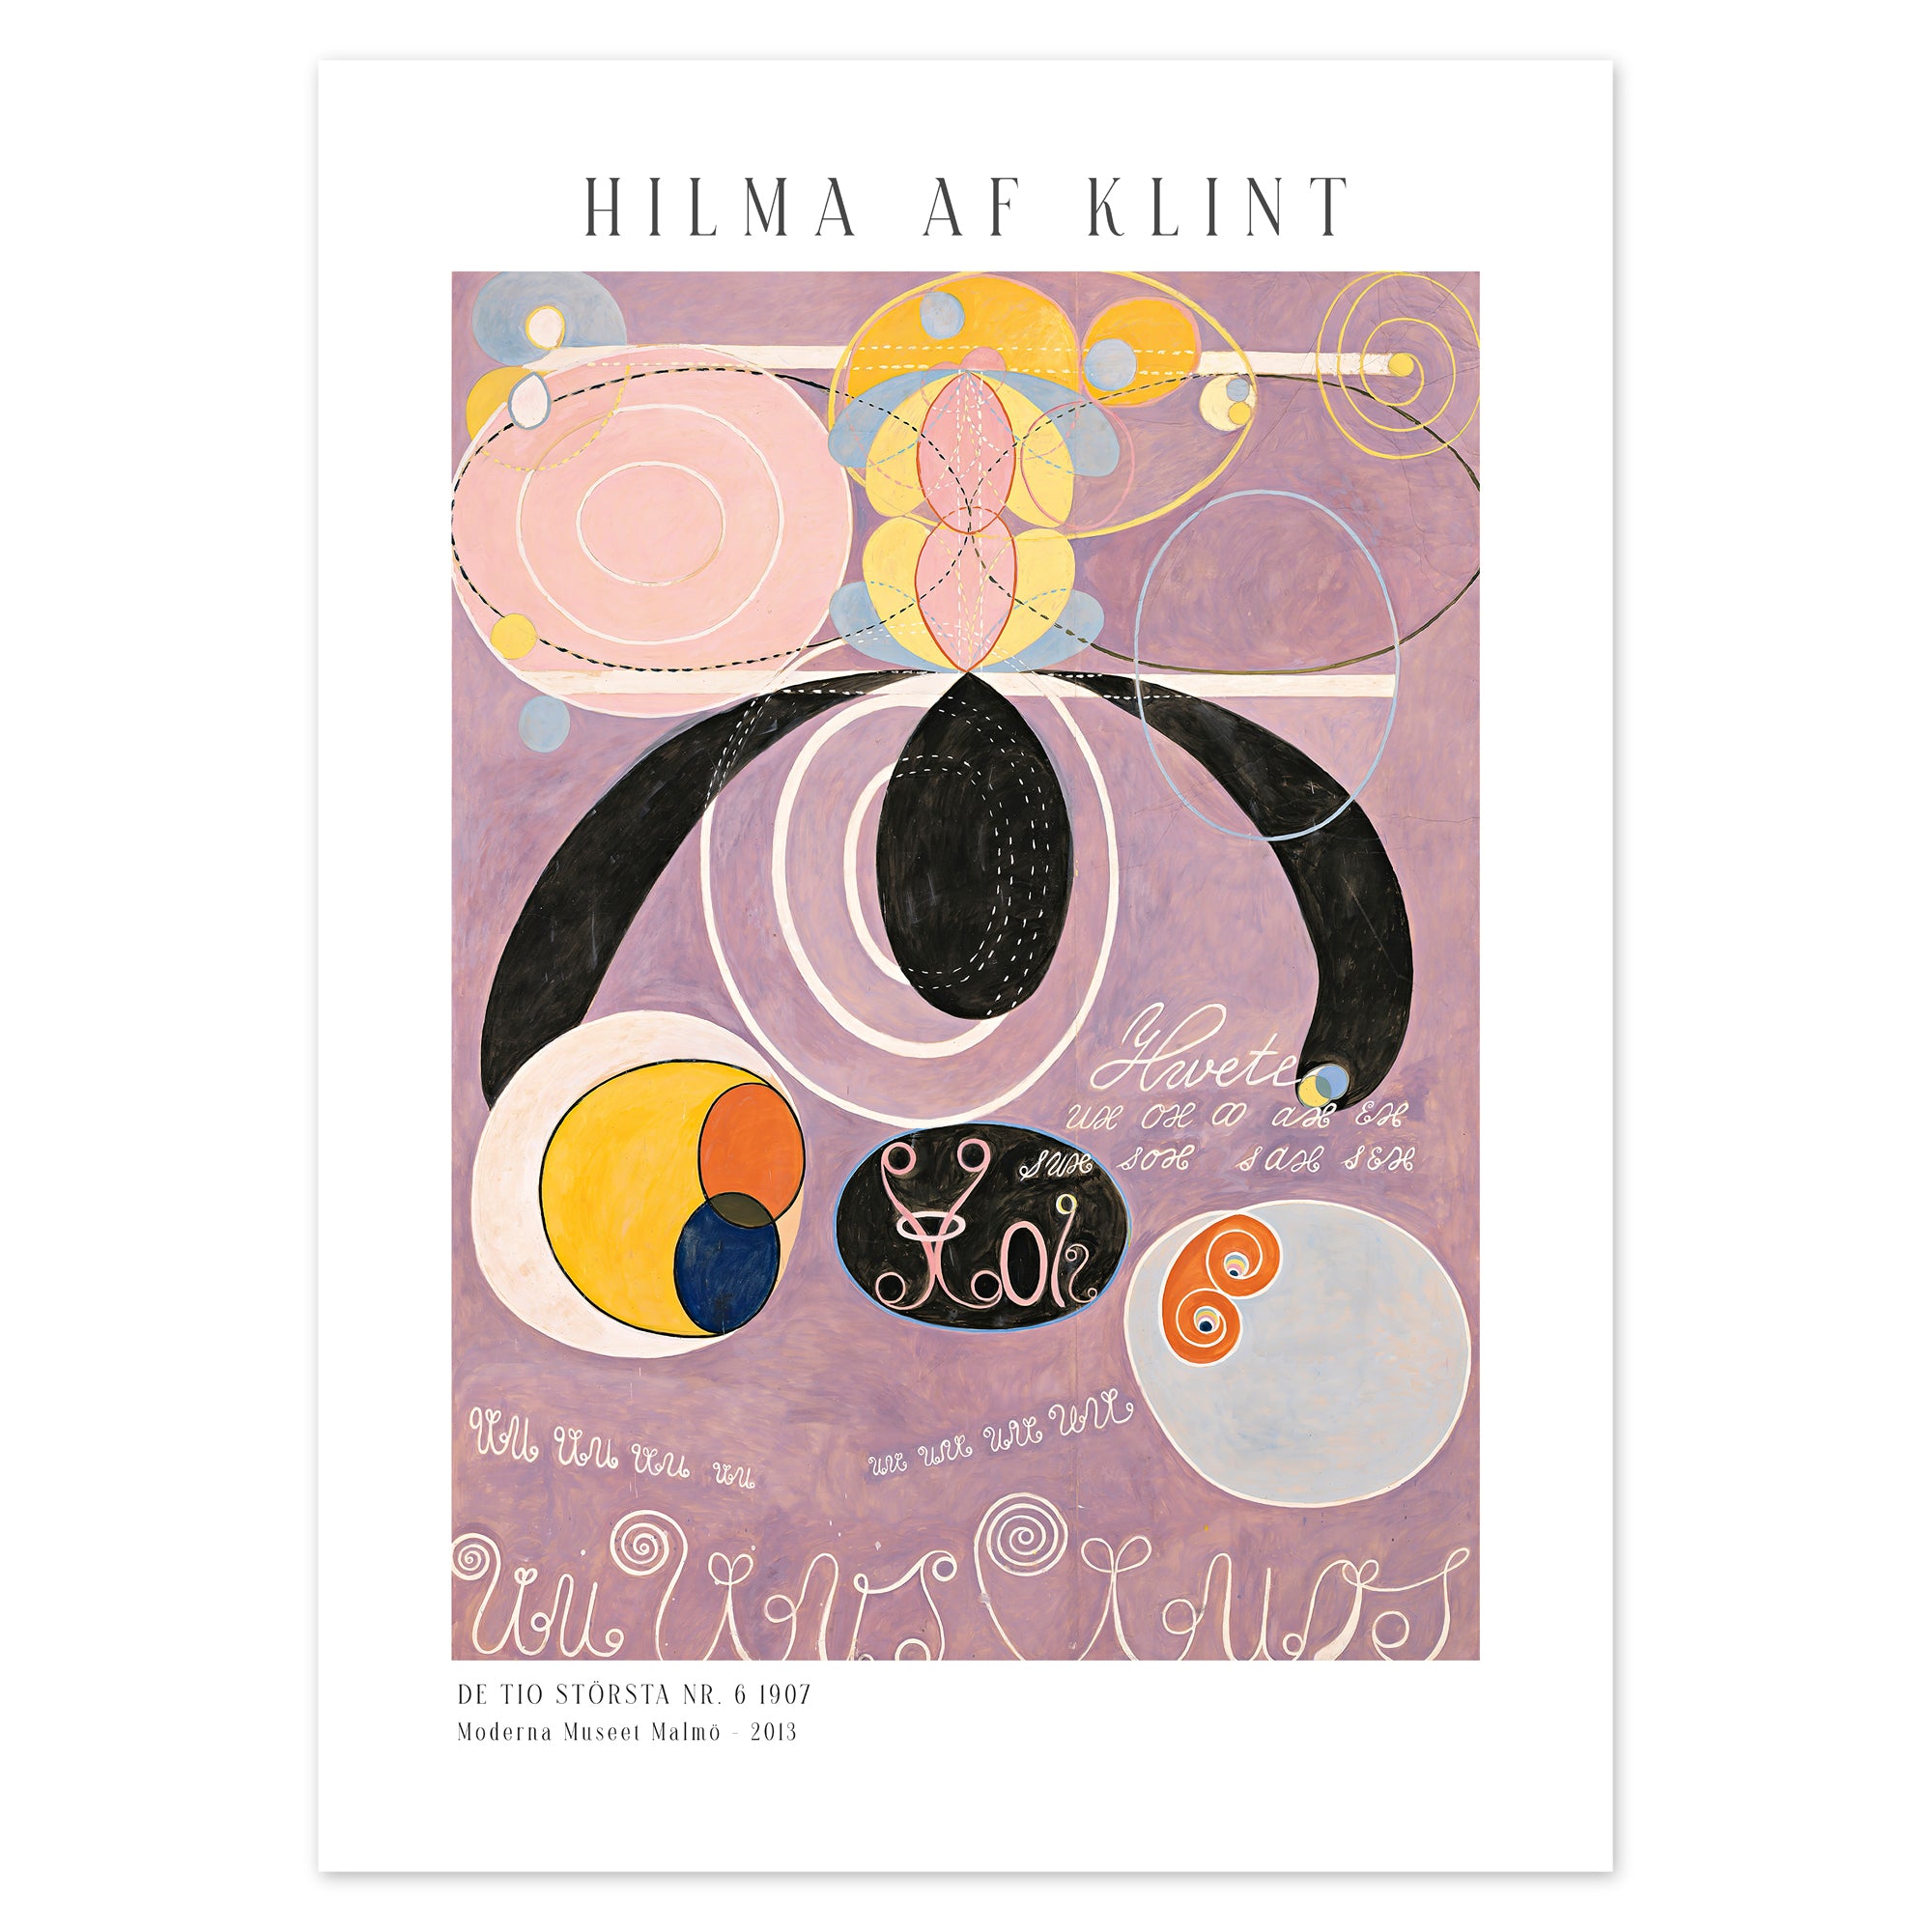 Hilma af Klint Poster - De tio största nr. 6